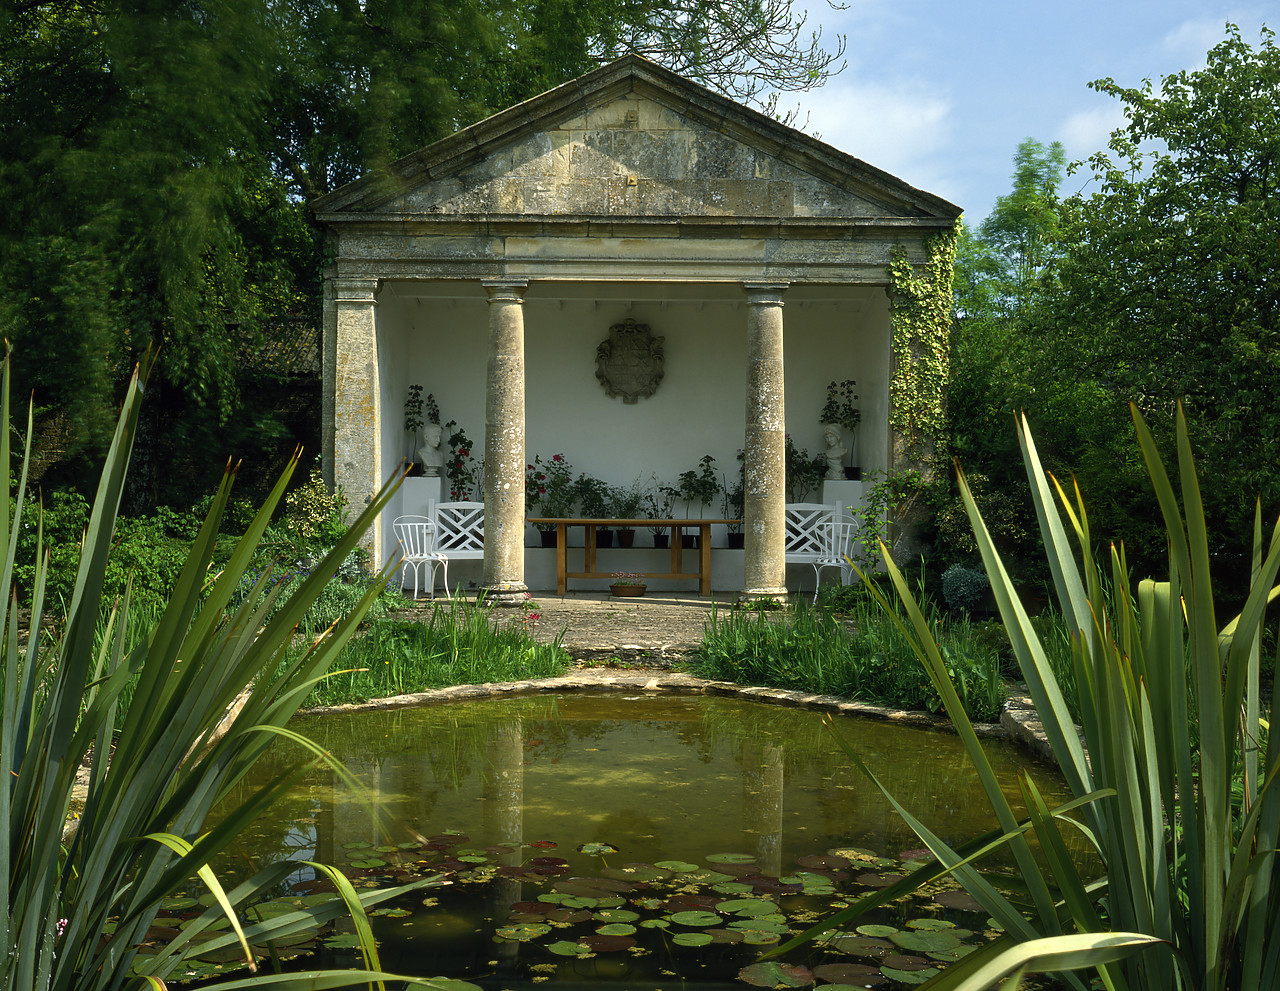 #892157-1 - Garden Folly & Pond, Barnsley House, Gloucestershire, England